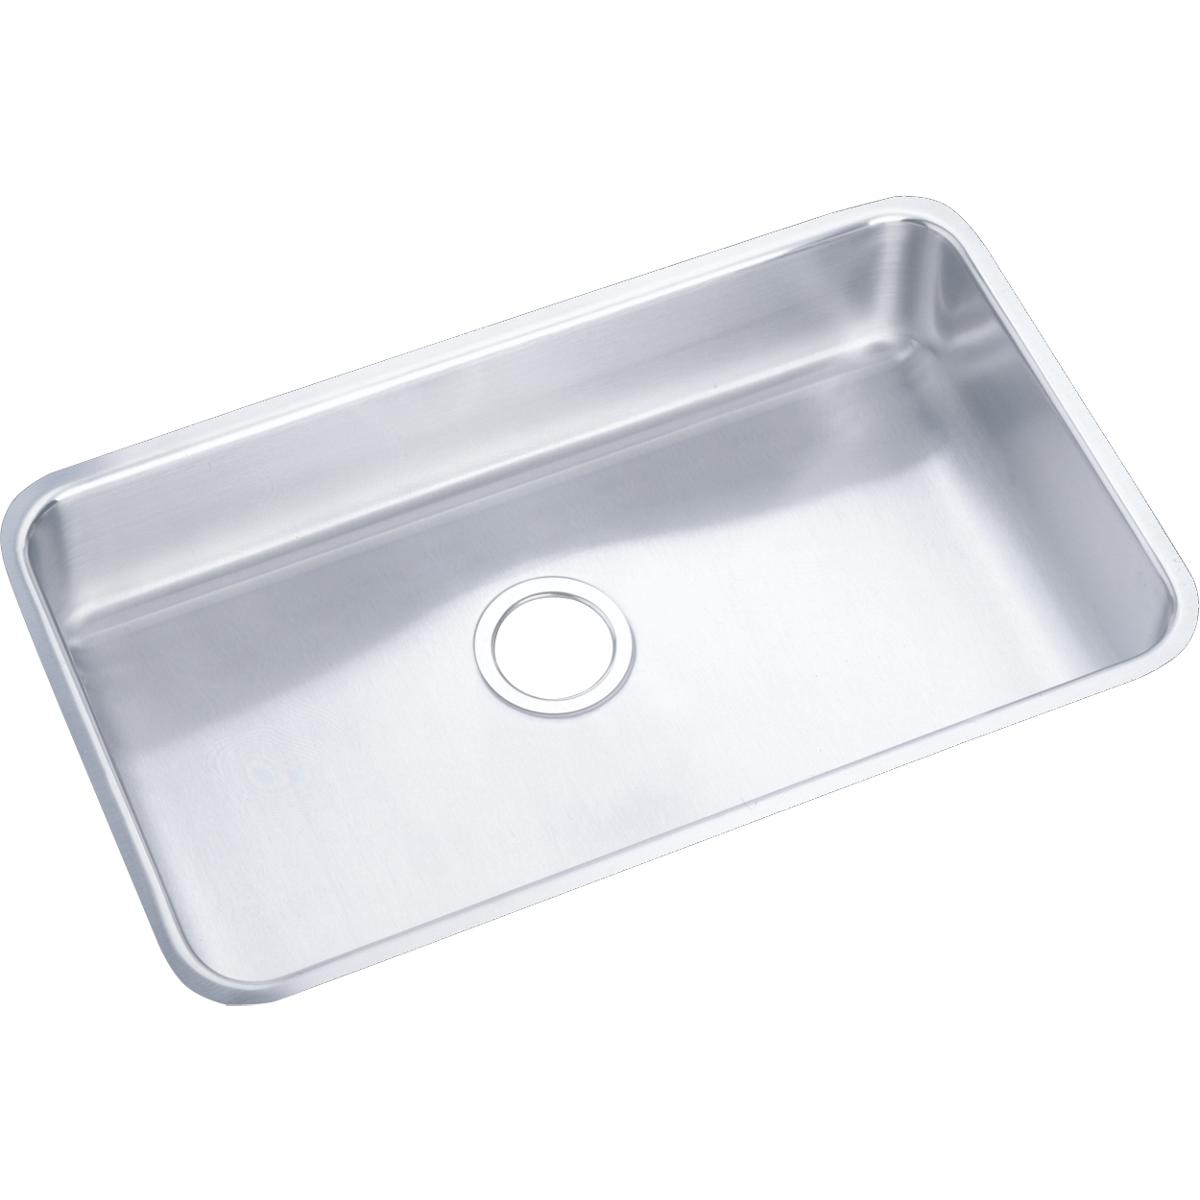 Elkay Stainless Steel Single Bowl Undermount Sink 1263188